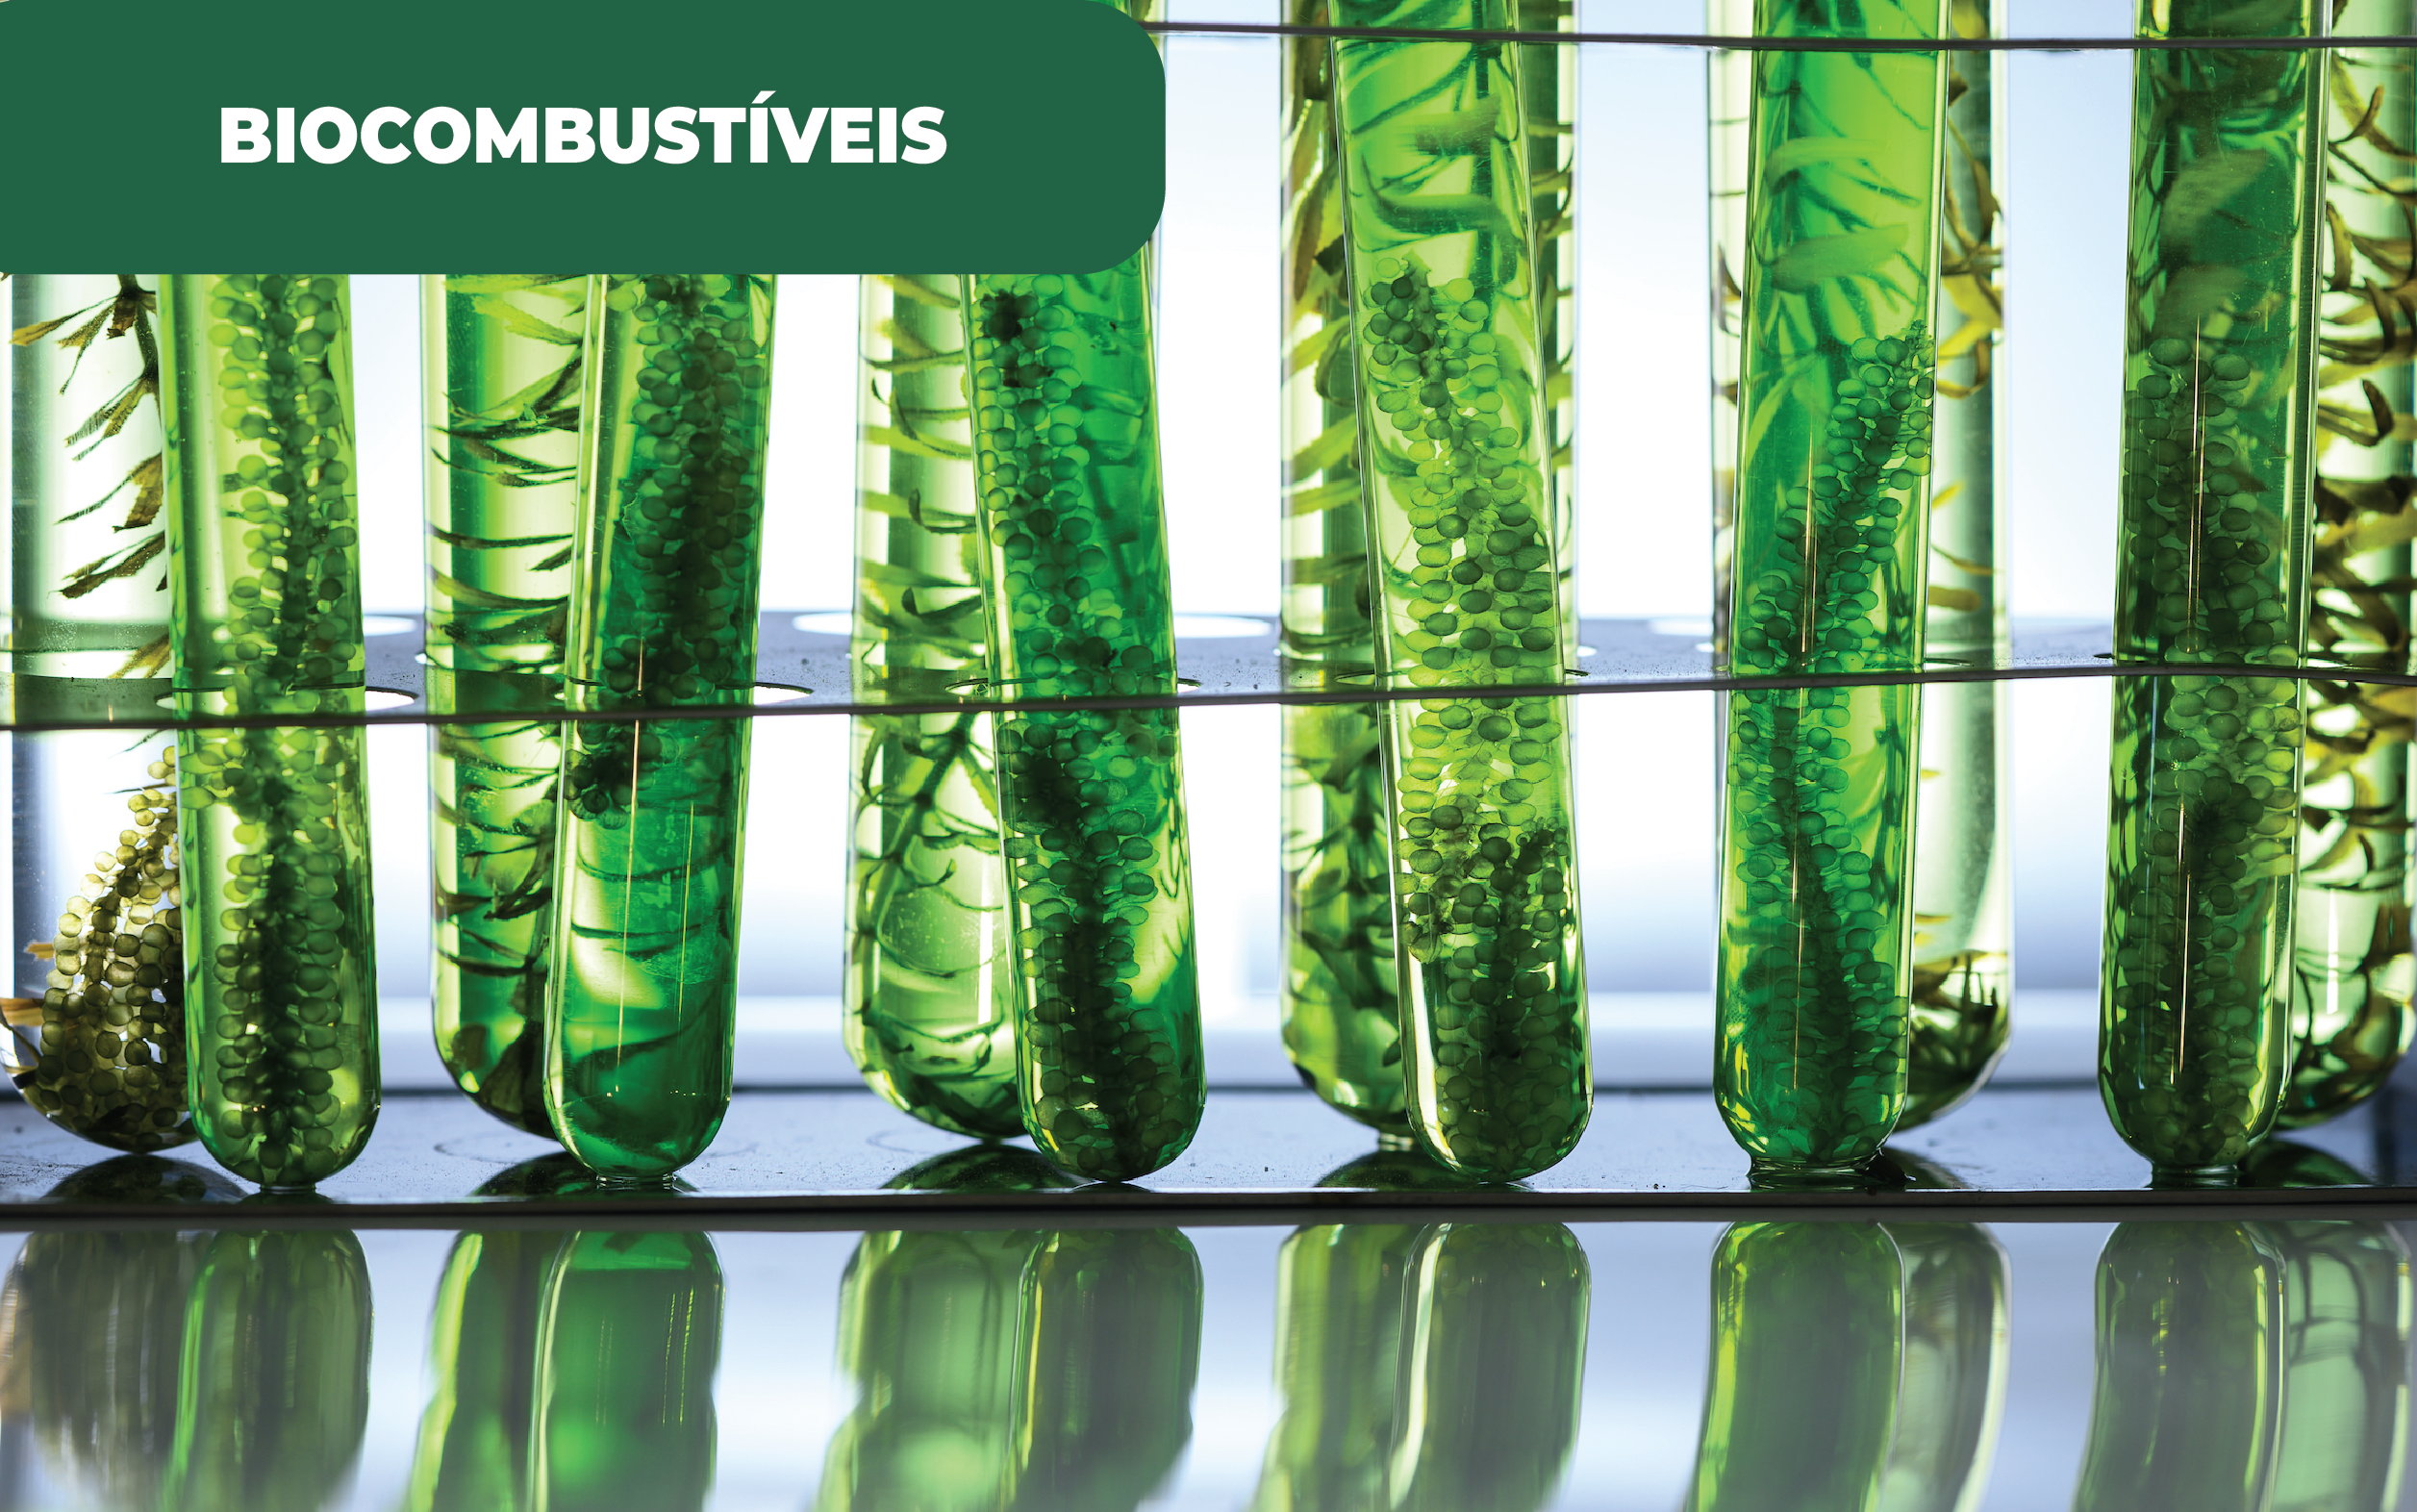 Imagem apresentando 6 tubos de ensaio contendo material biológico, plantas, de cor verde.